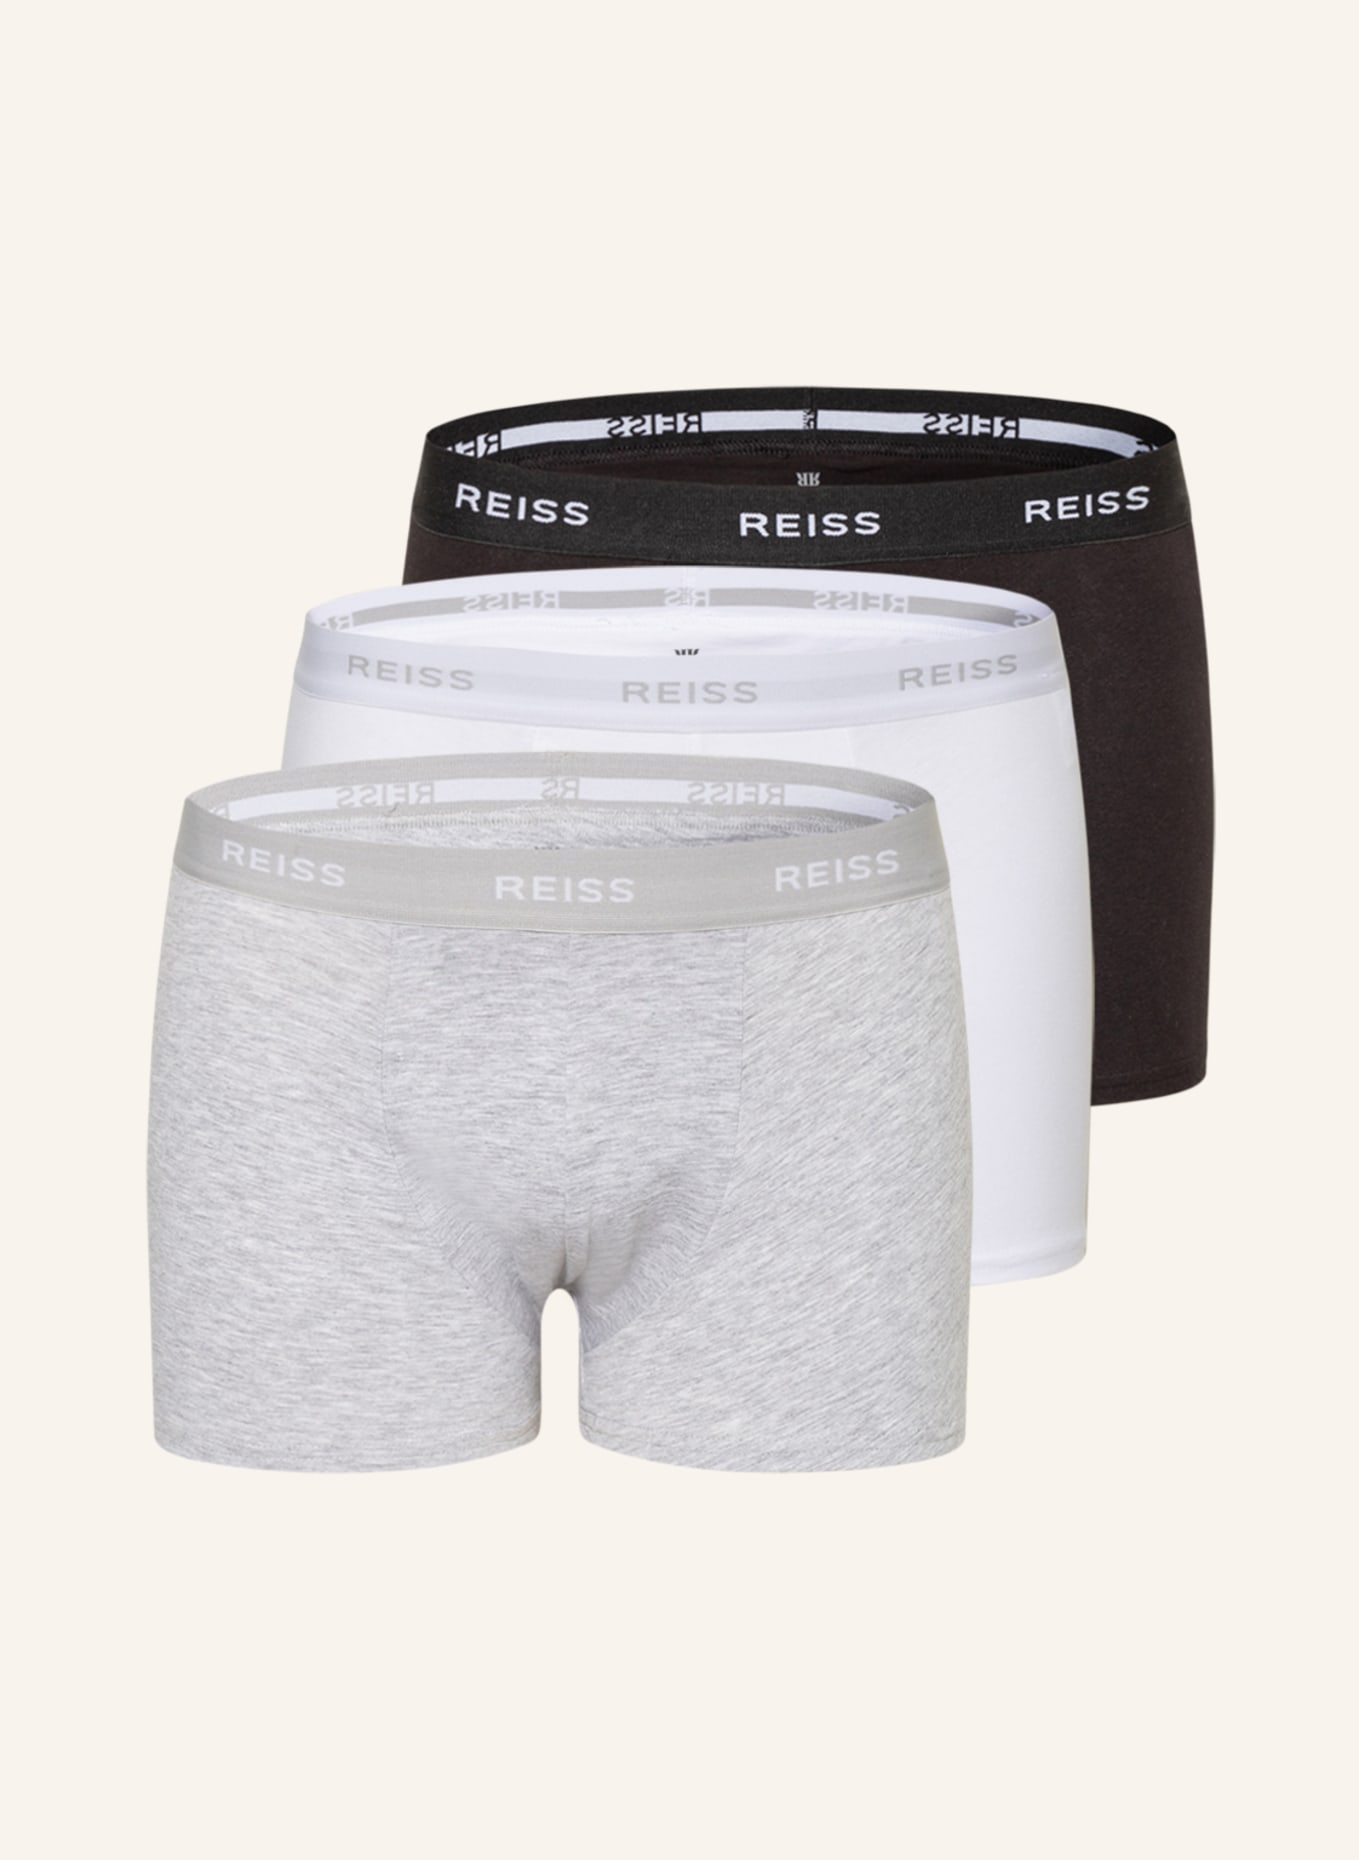 REISS 3-pack boxer shorts HELLER, Color: BLACK/ WHITE/ GRAY (Image 1)